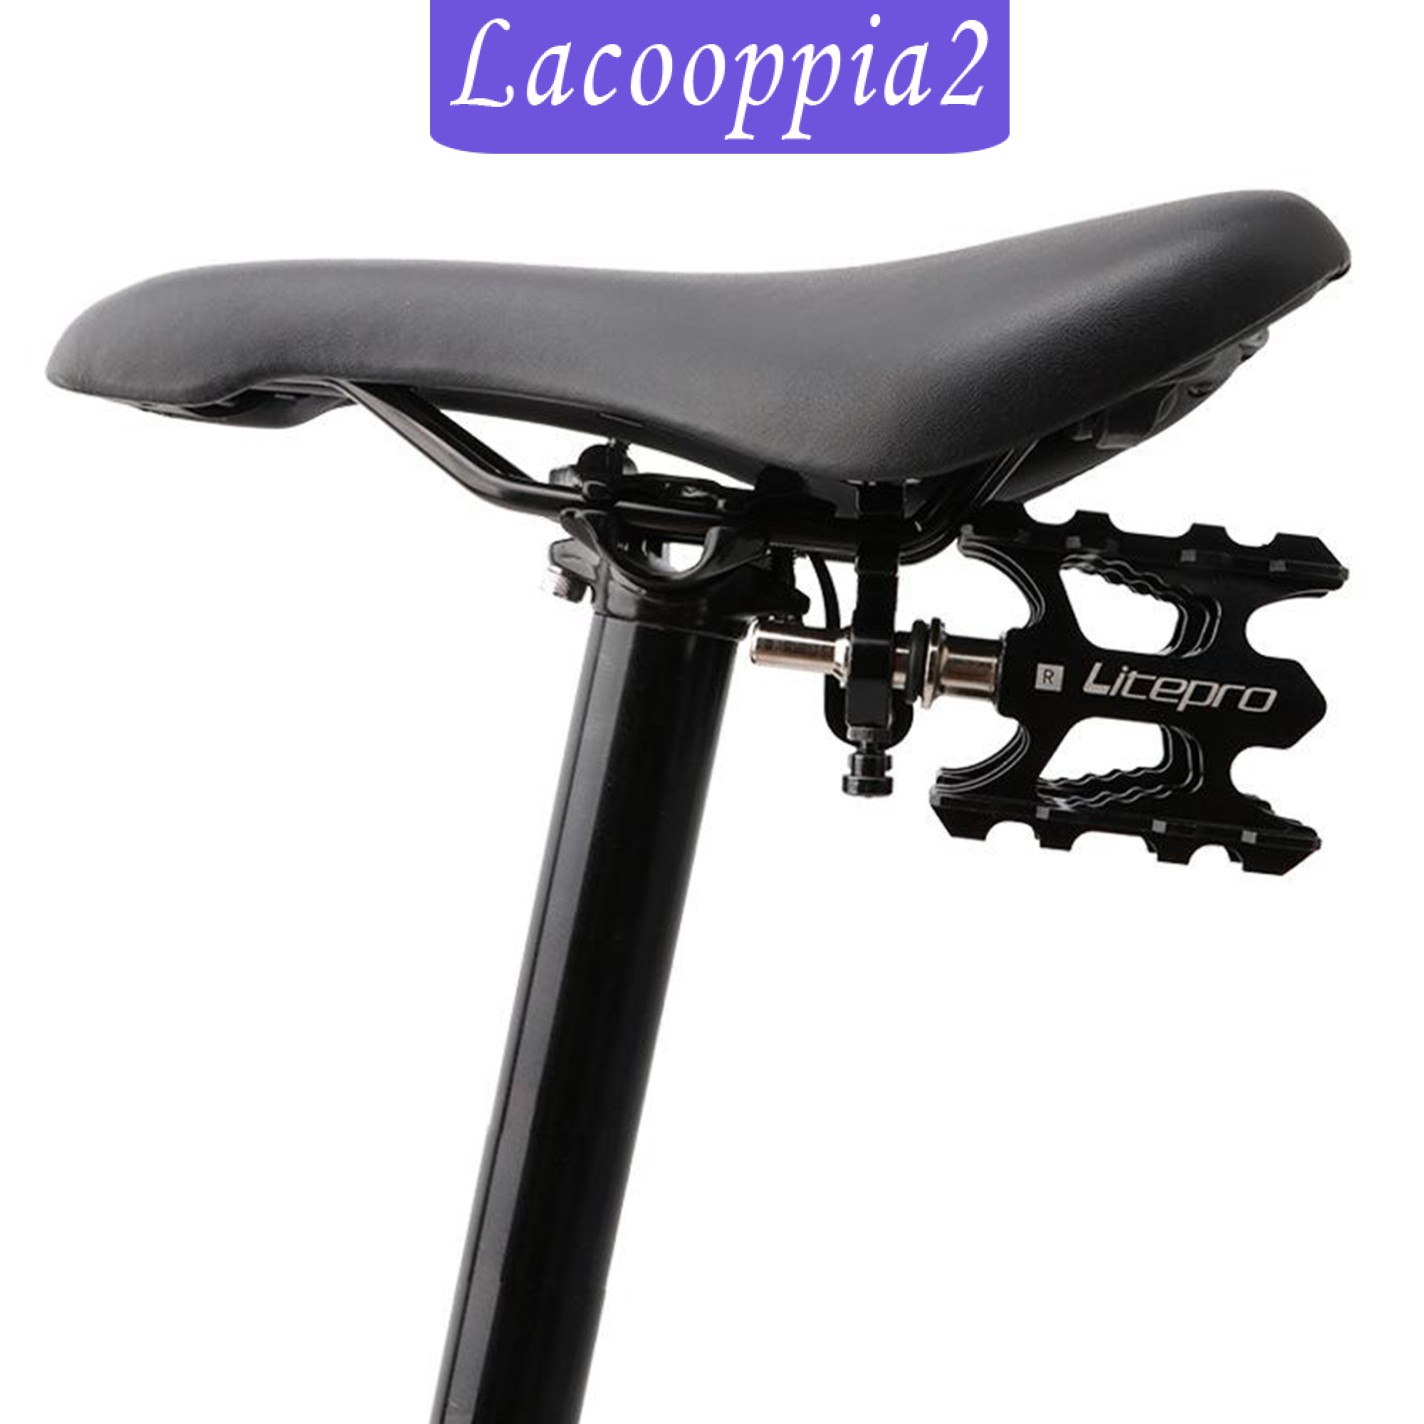 Giá Đỡ Bàn Đạp Xe Đạp Tháo Lắp Nhanh Cho Brompton Lacoopppia2